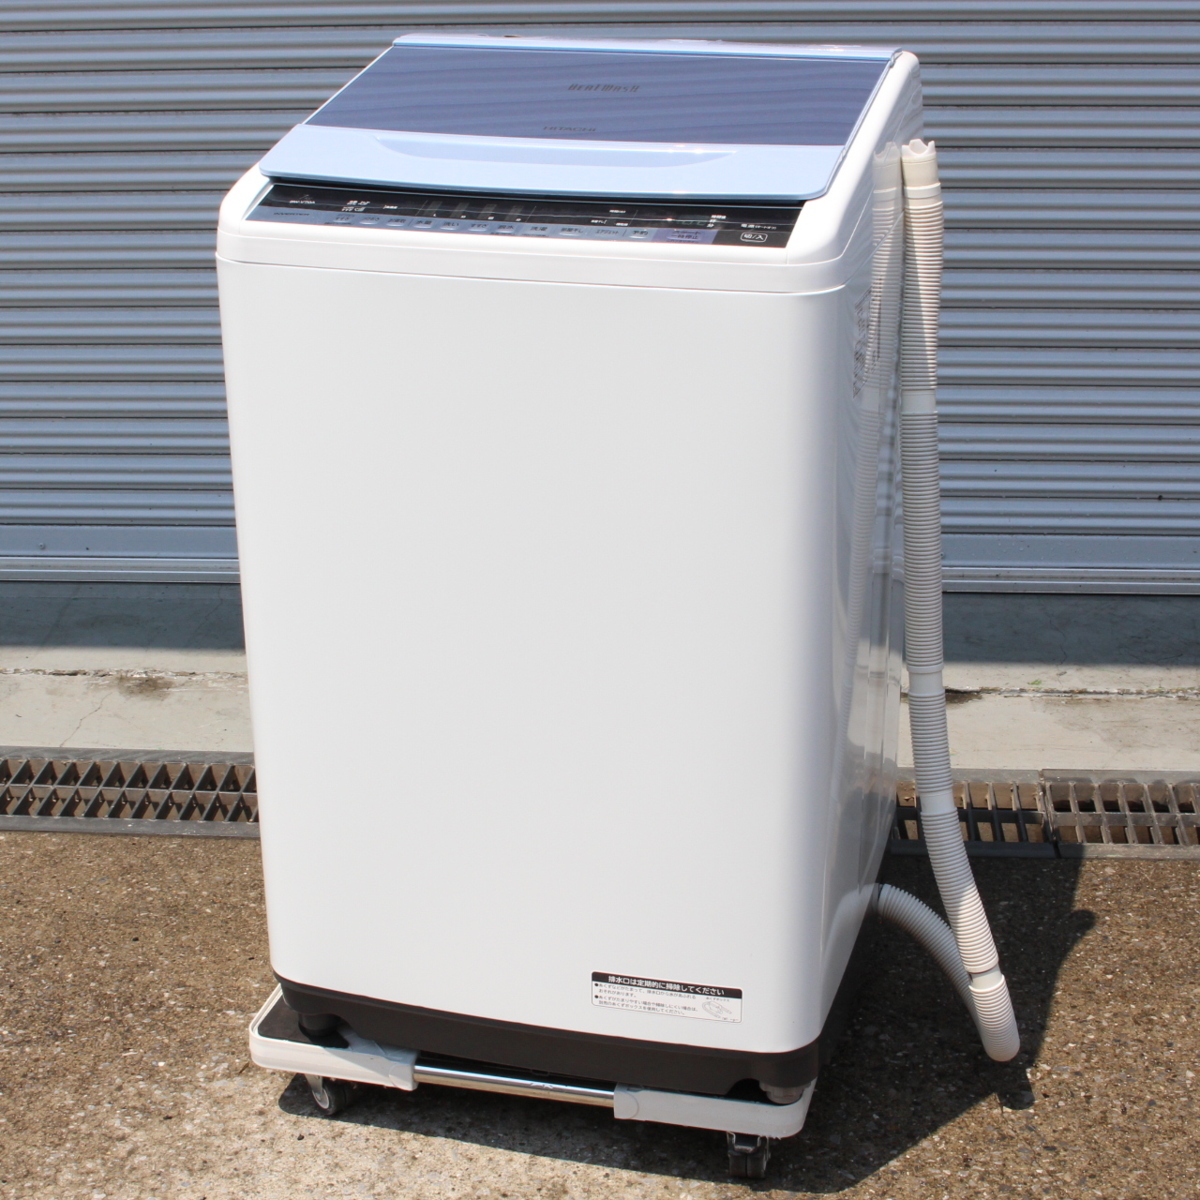 横浜市緑区にて 日立 洗濯機 BW-V70 2016年製 を出張買取させて頂きました。